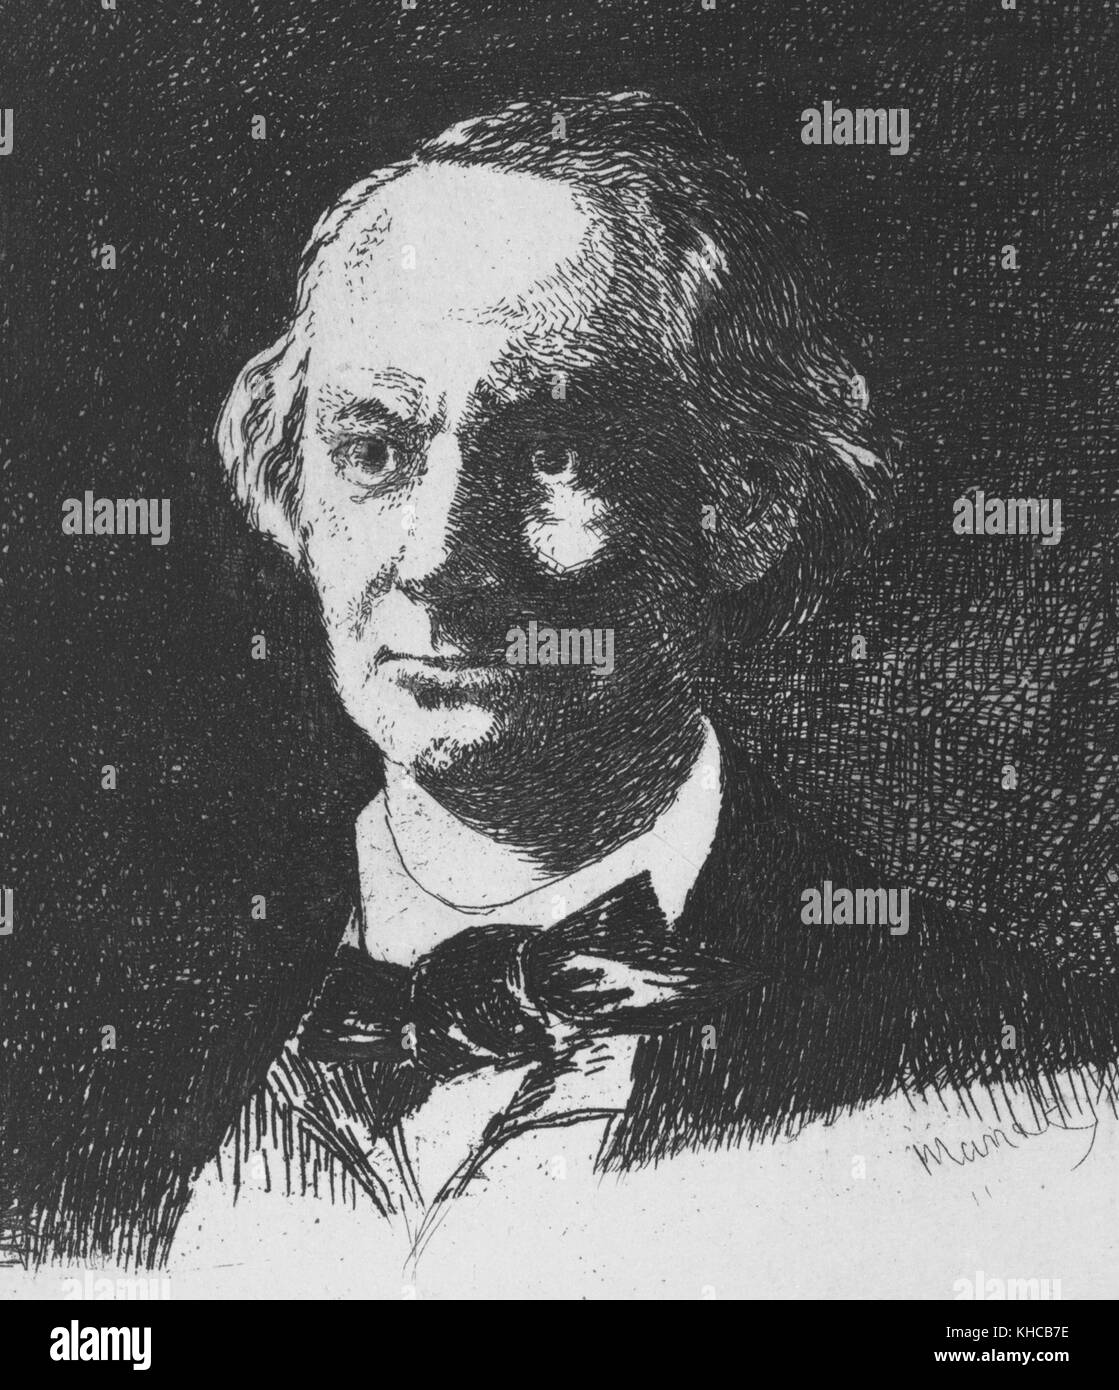 Porträt von Charles Boudelaire geätzt, von Edouard Manet, diese Radierung wurde als Frontispiz Asselineau Biographie von Baudelaire 1869, 1865 veröffentlicht. Von der New York Public Library. Stockfoto